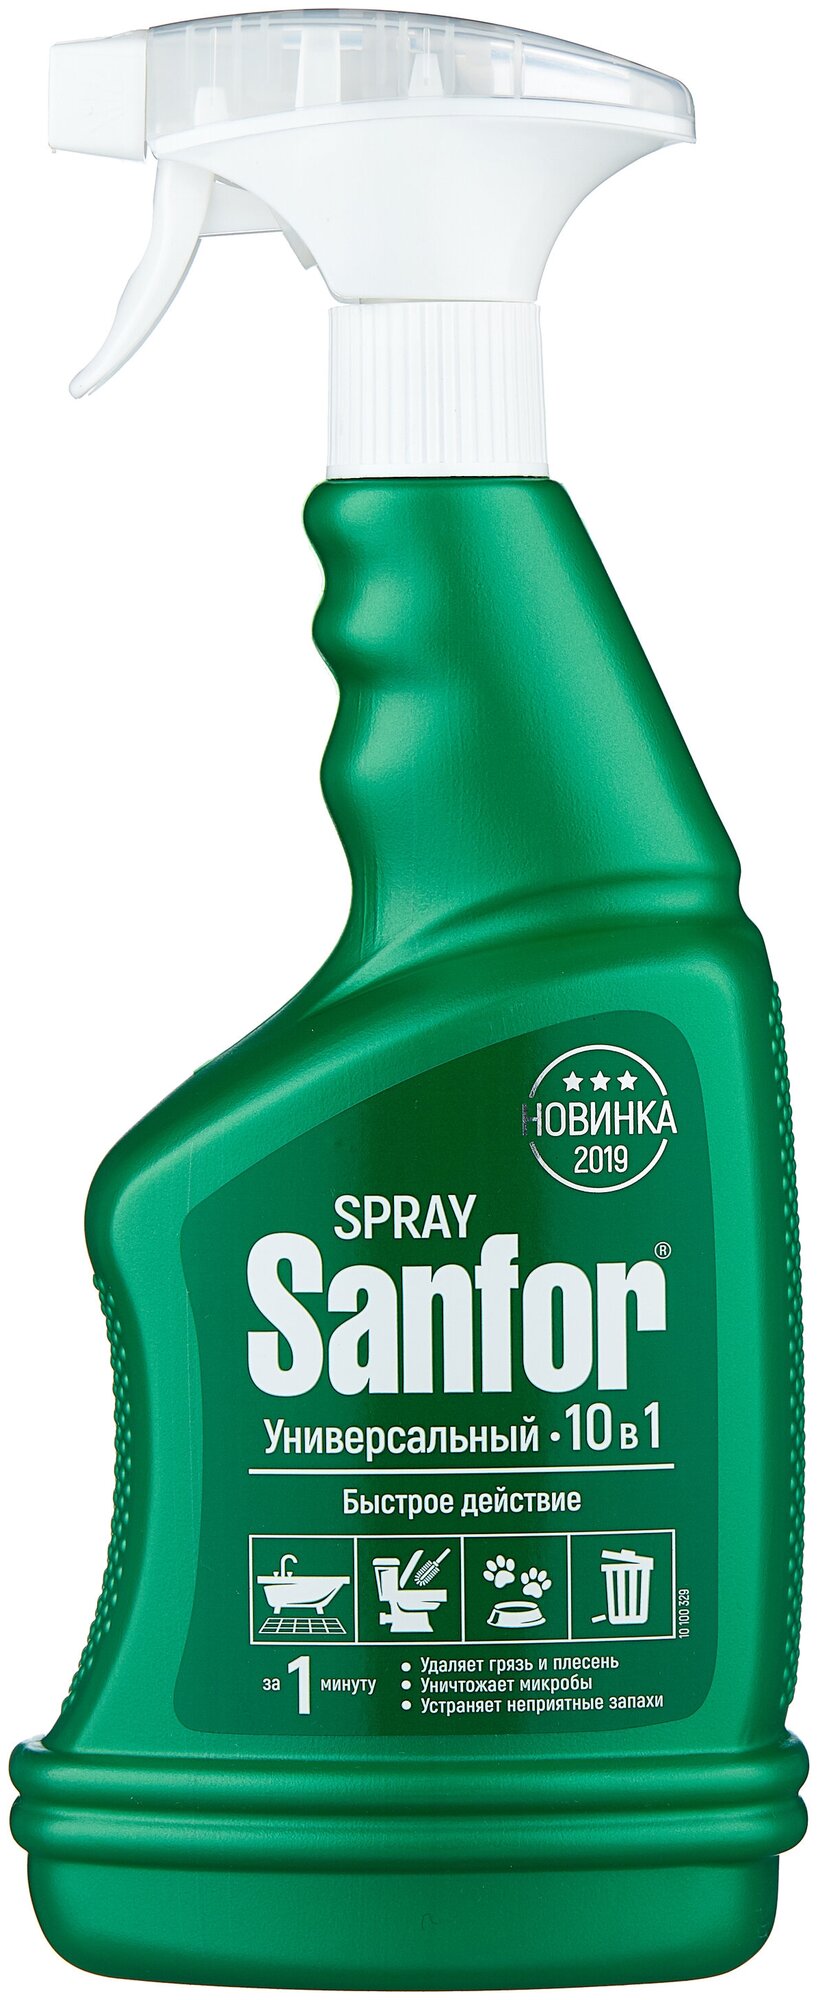 Sanfor спрей Универсальный 10в1, 0.75 л